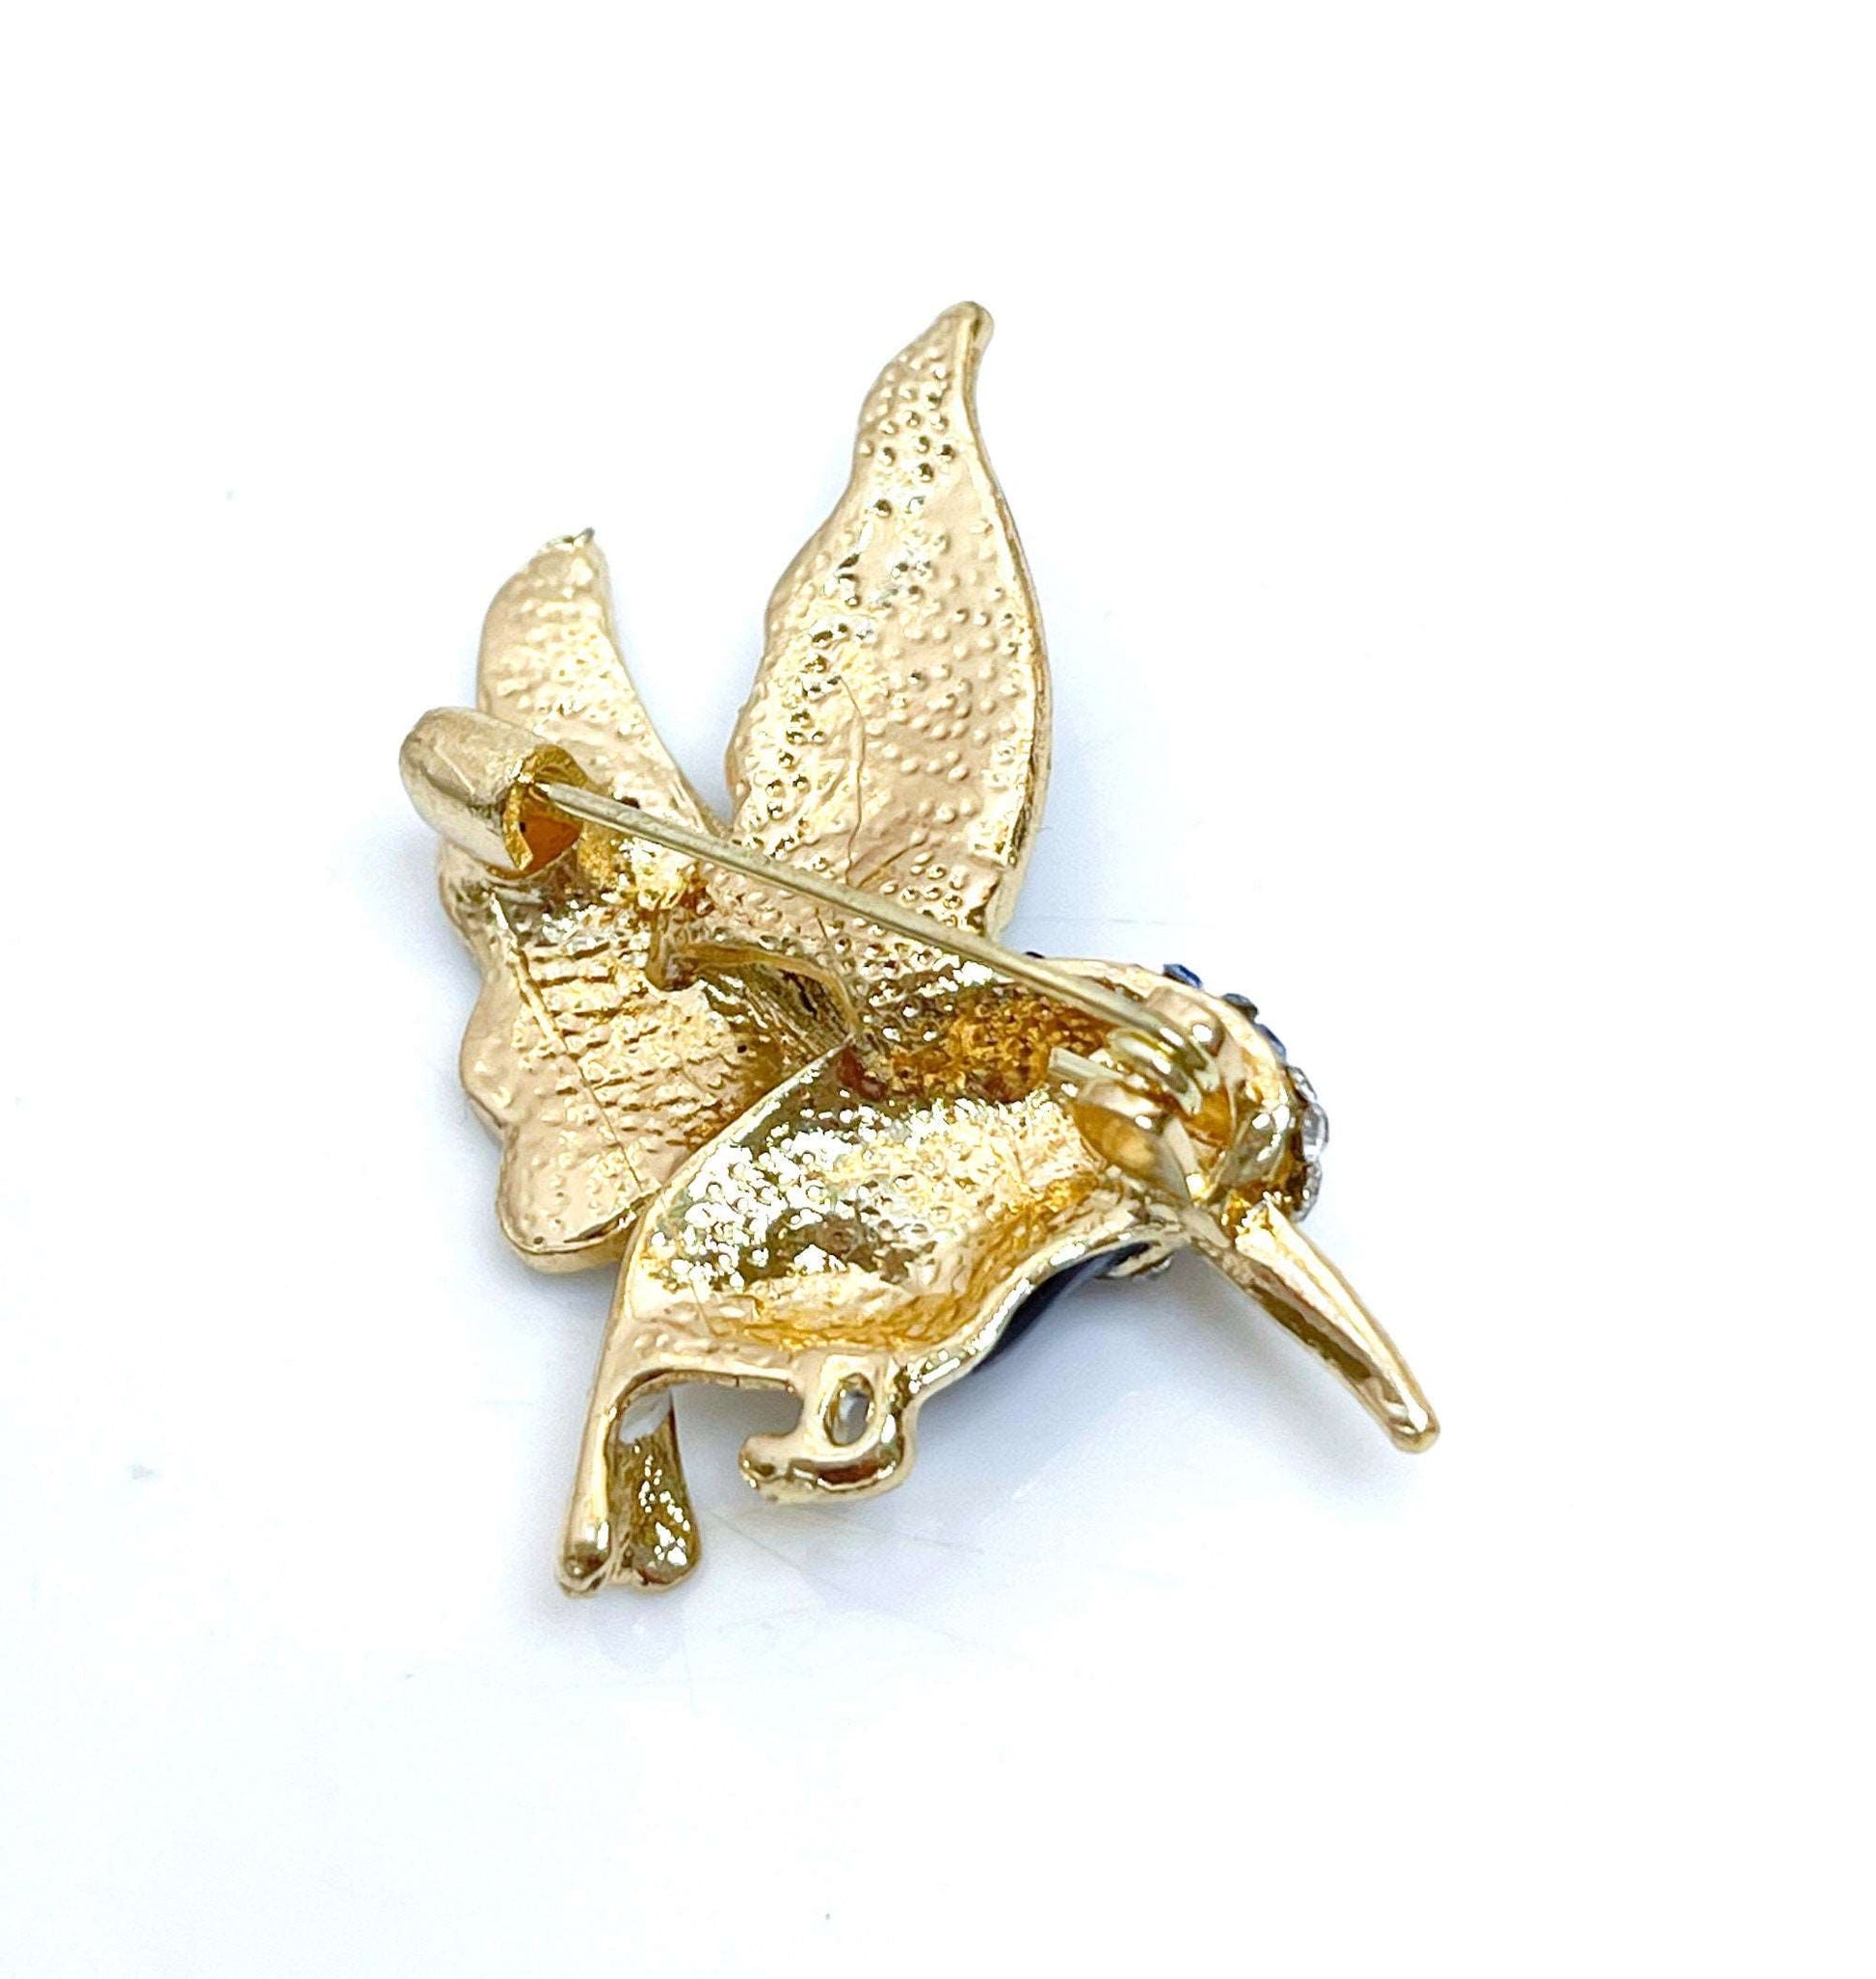 Cute Hummingbird Brooch | Gift for Bird Lovers | Blue and Gold Hummingbird | Cute Bird Pin